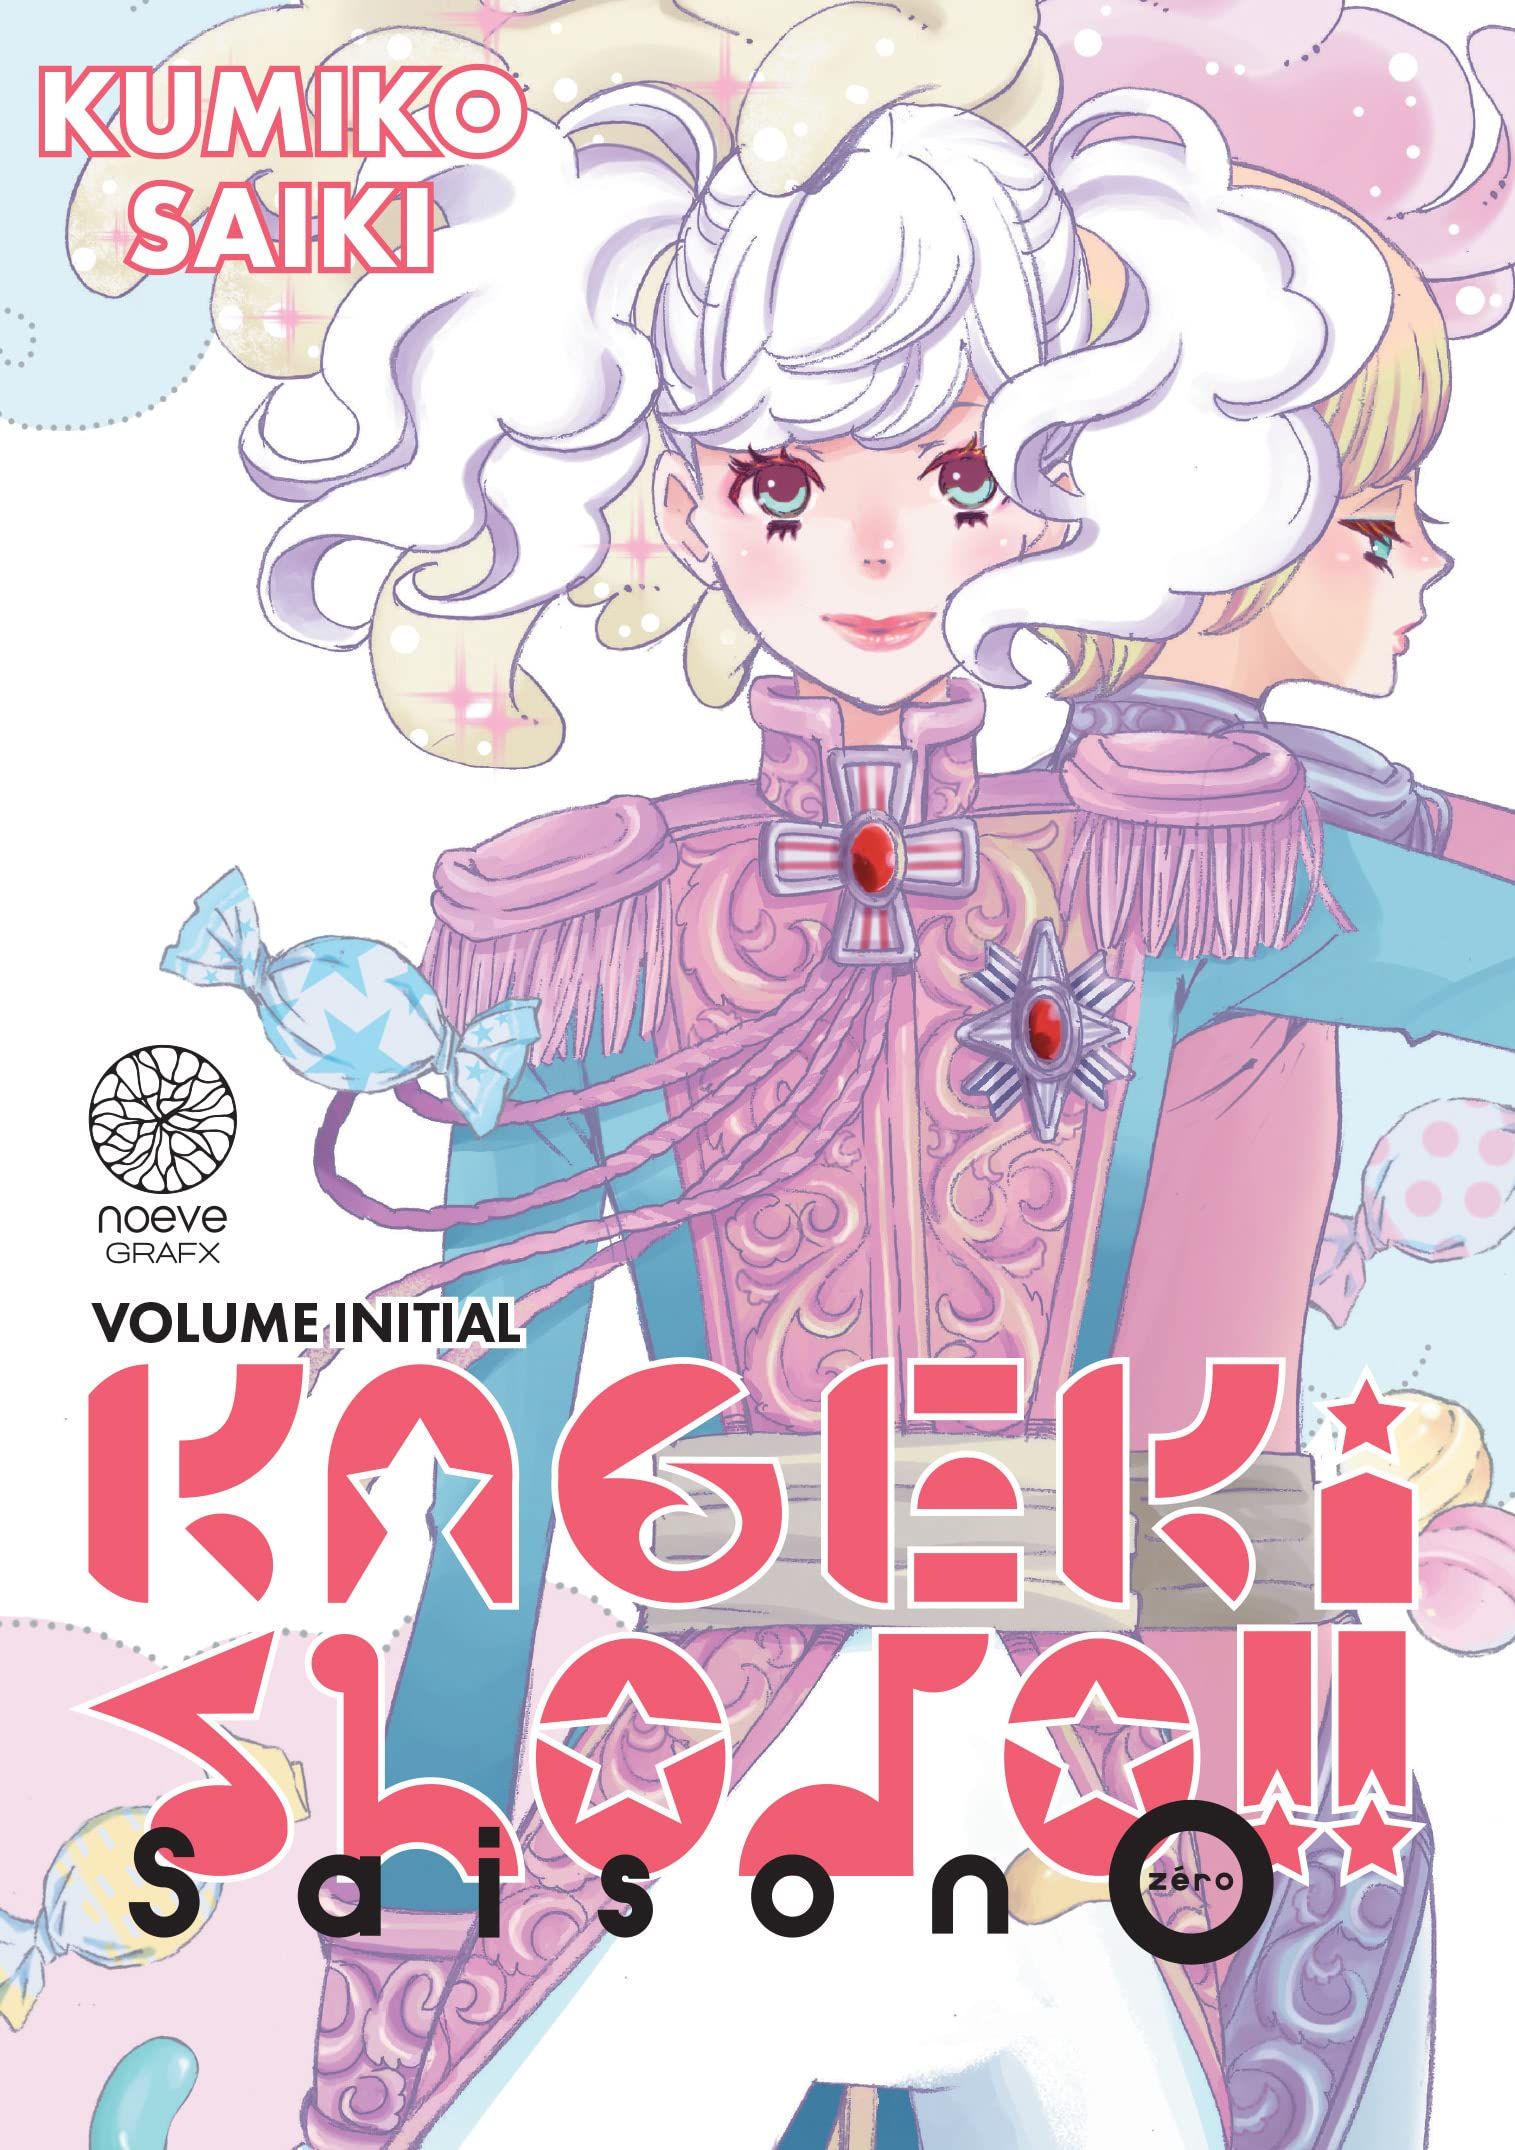 Kageki Shojo!! Vol. 1 by Saiki, Kumiko